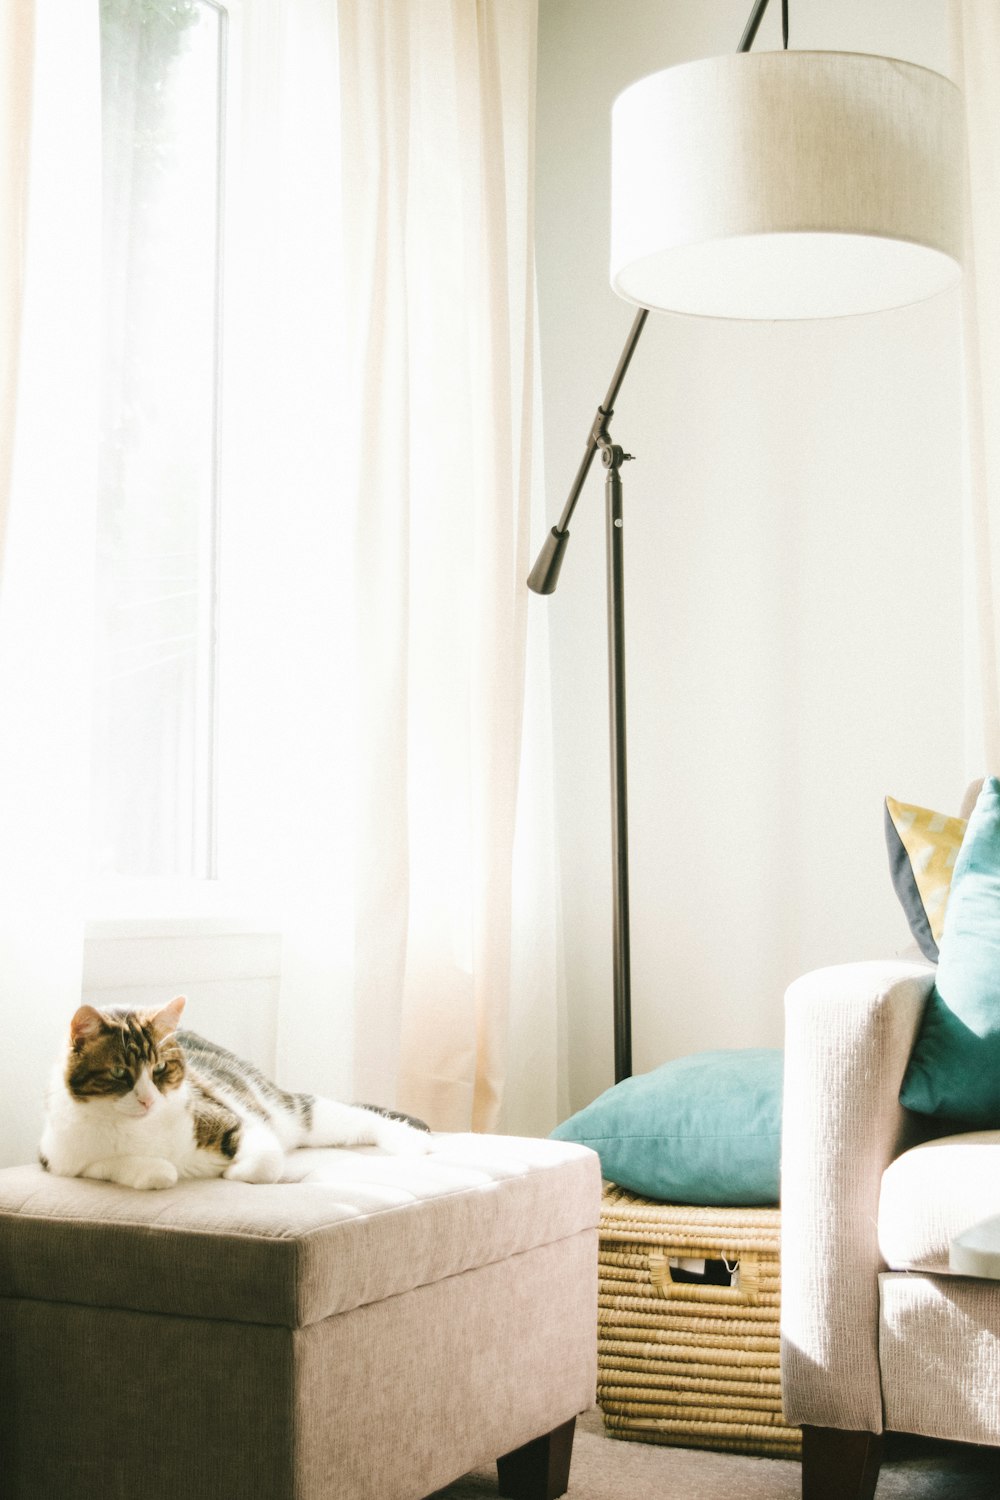 gatto grigio e bianco sdraiato su pouf marrone vicino al divano, cesto di vestiti e lampada da terra all'interno della stanza ben illuminata